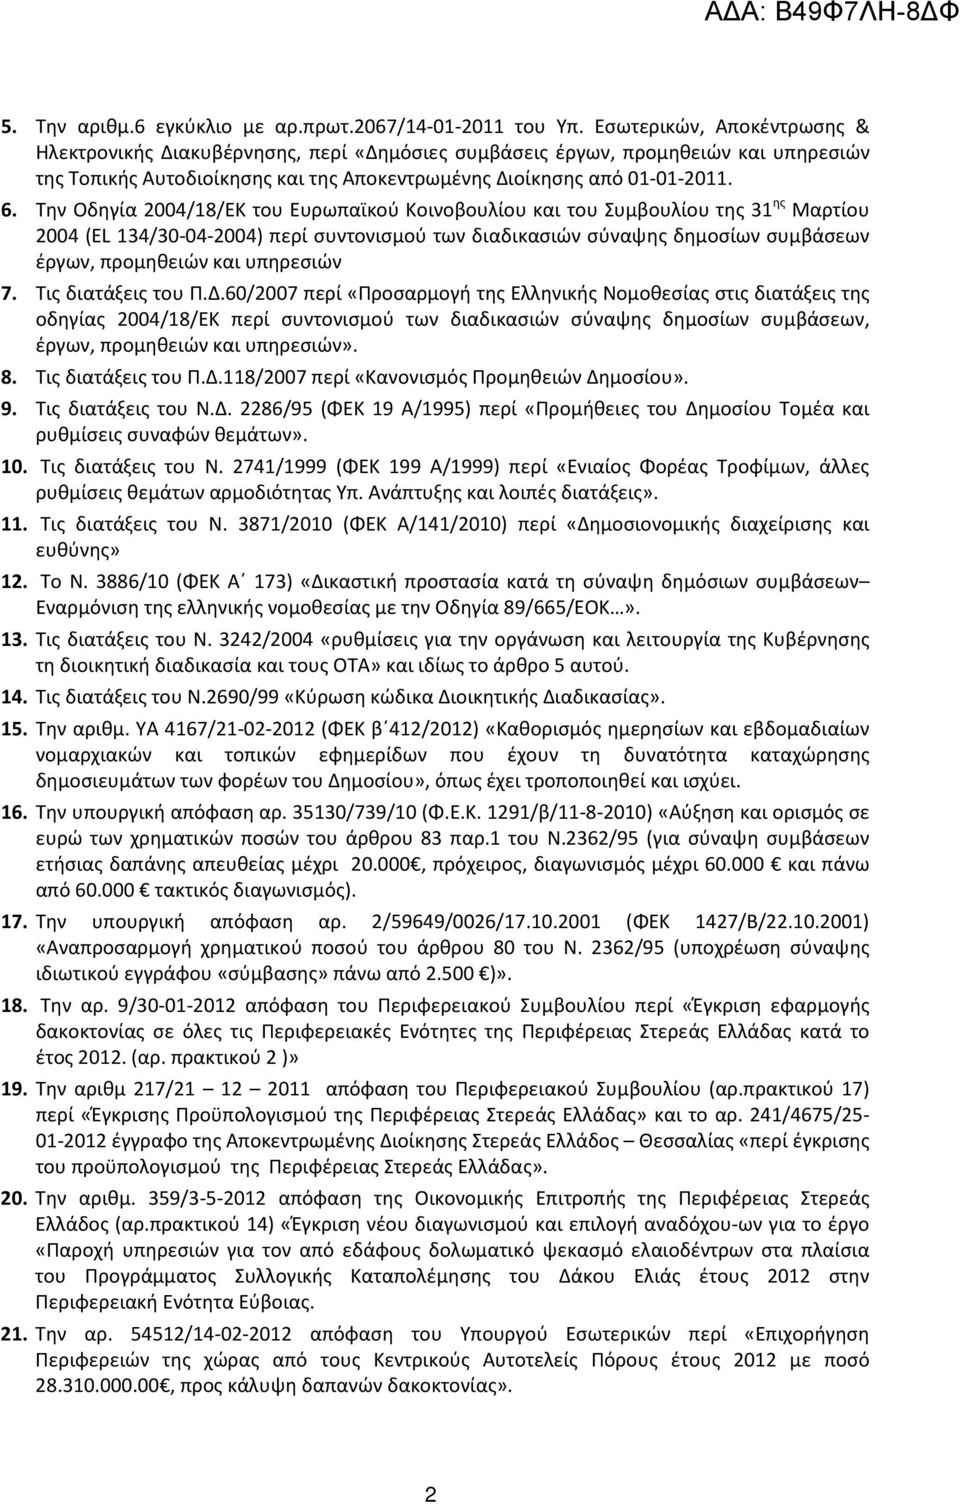 Την Οδηγία 2004/18/ΕΚ του Ευρωπαϊκού Κοινοβουλίου και του Συμβουλίου της 31 ης Μαρτίου 2004 (EL 134/30-04-2004) περί συντονισμού των διαδικασιών σύναψης δημοσίων συμβάσεων έργων, προμηθειών και